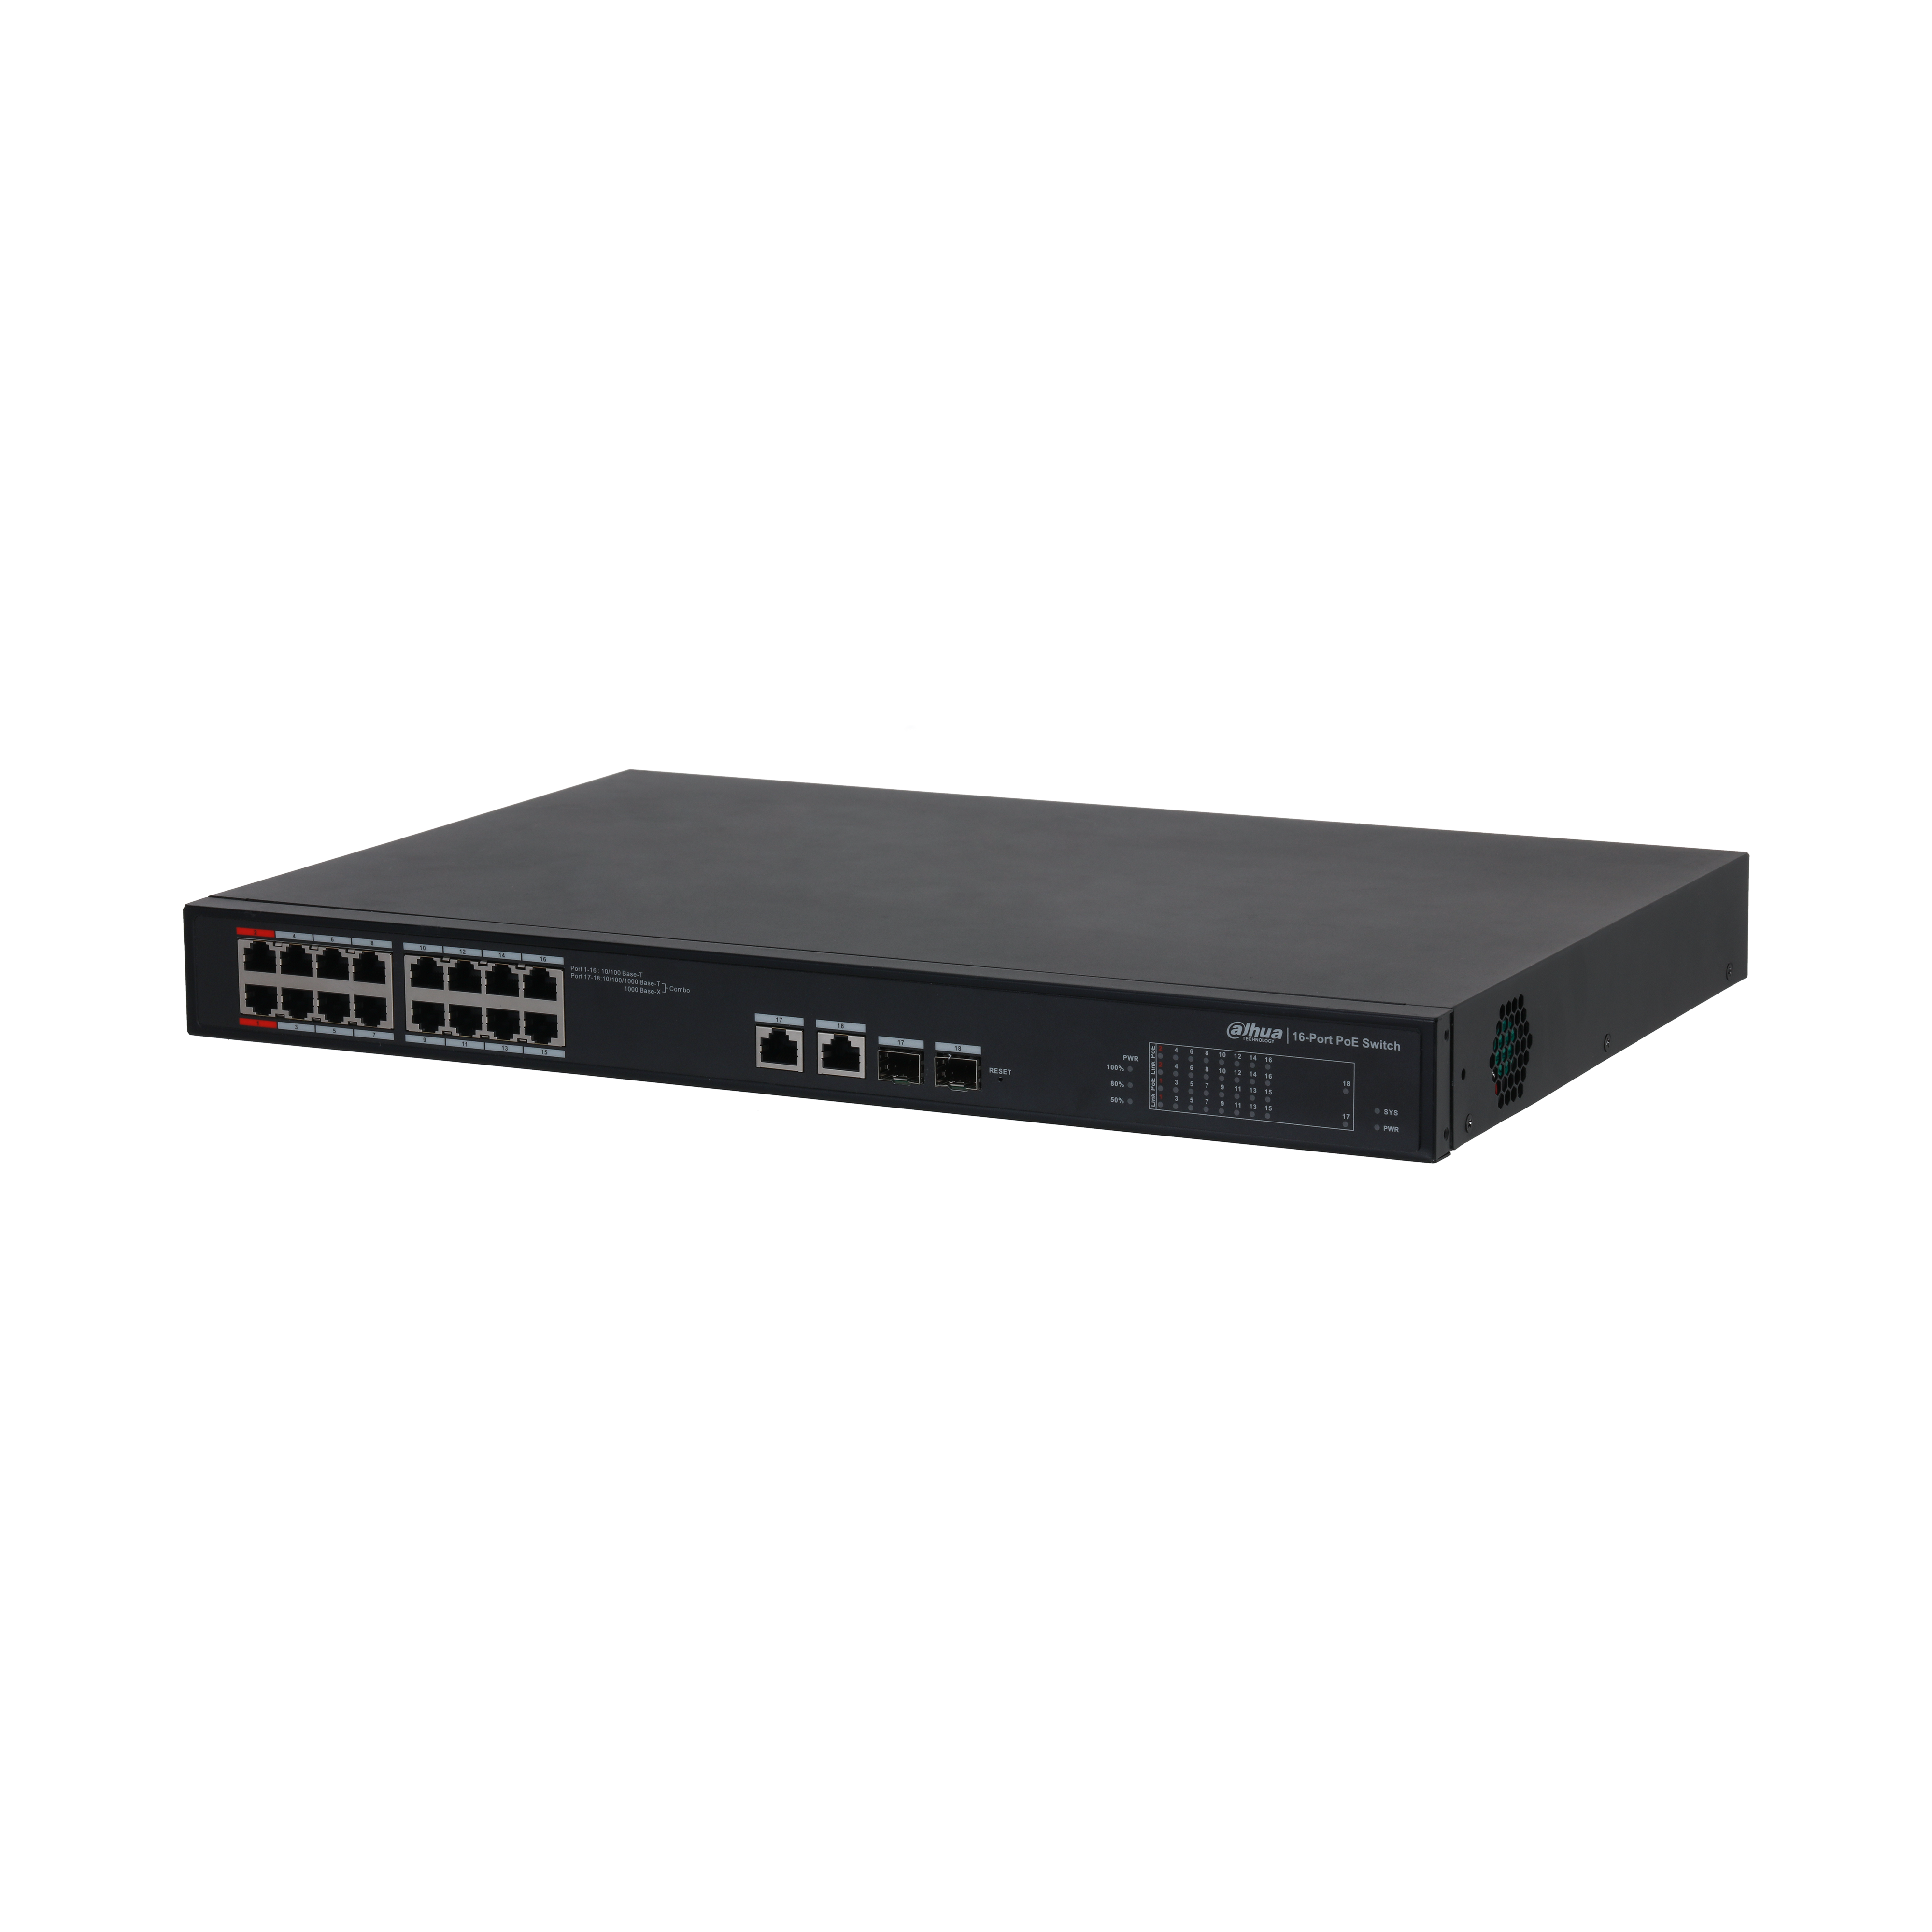 DAHUA S4101-16ET2GF-240-C 18-Port Cloud Managed Switch with 16-Port PoE